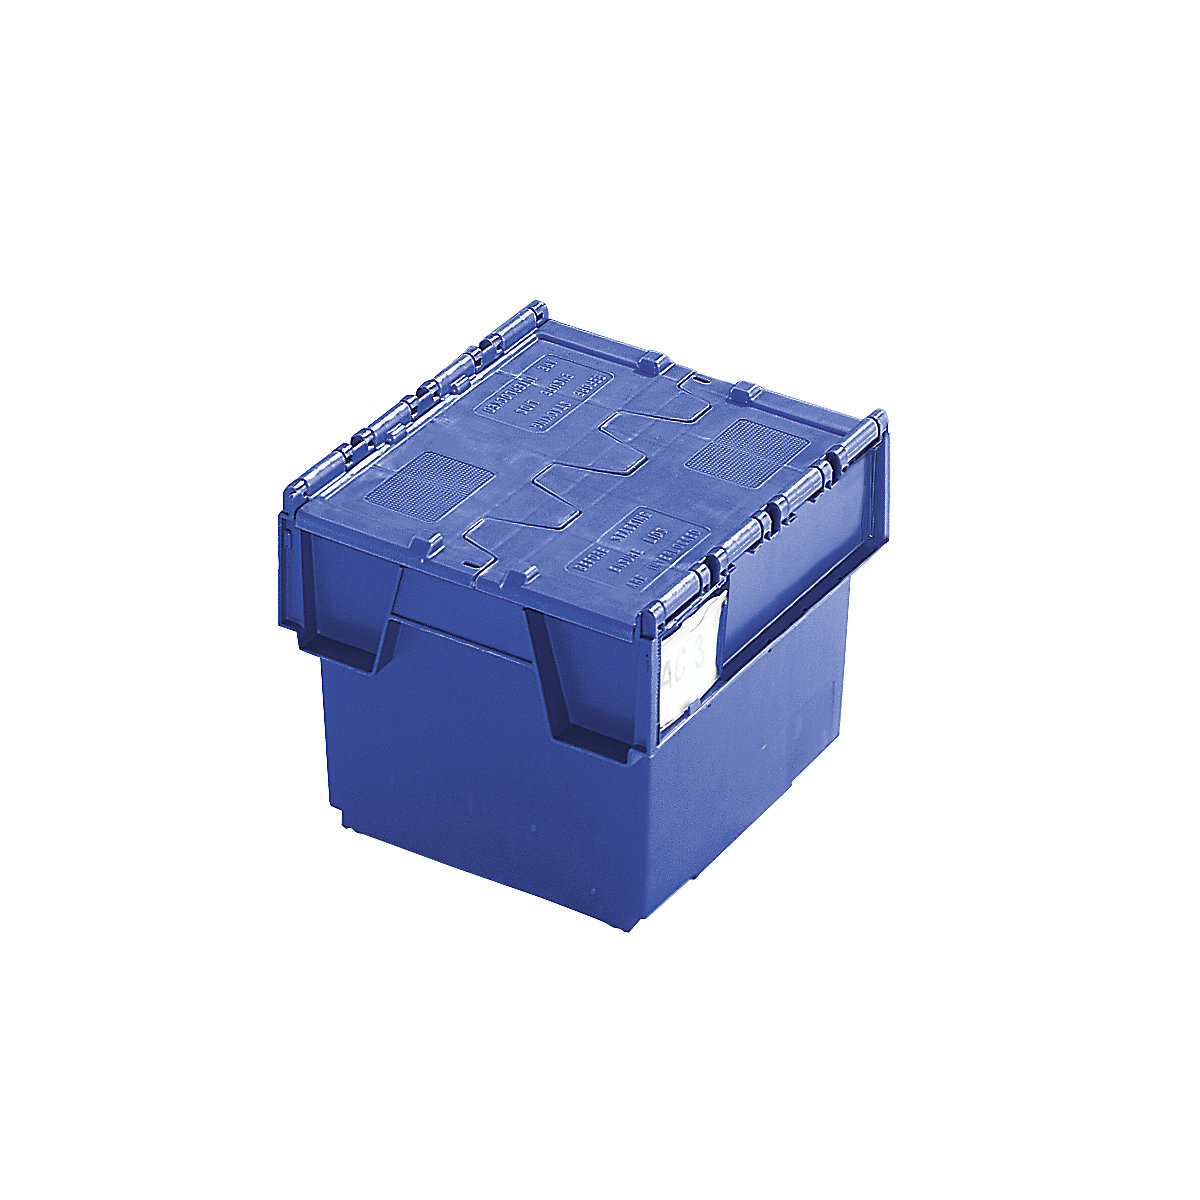 Mehrweg-Stapelbehälter mit Klappdeckel, Inhalt 20 Liter, LxBxH 400 x 300 x 252 mm, blau